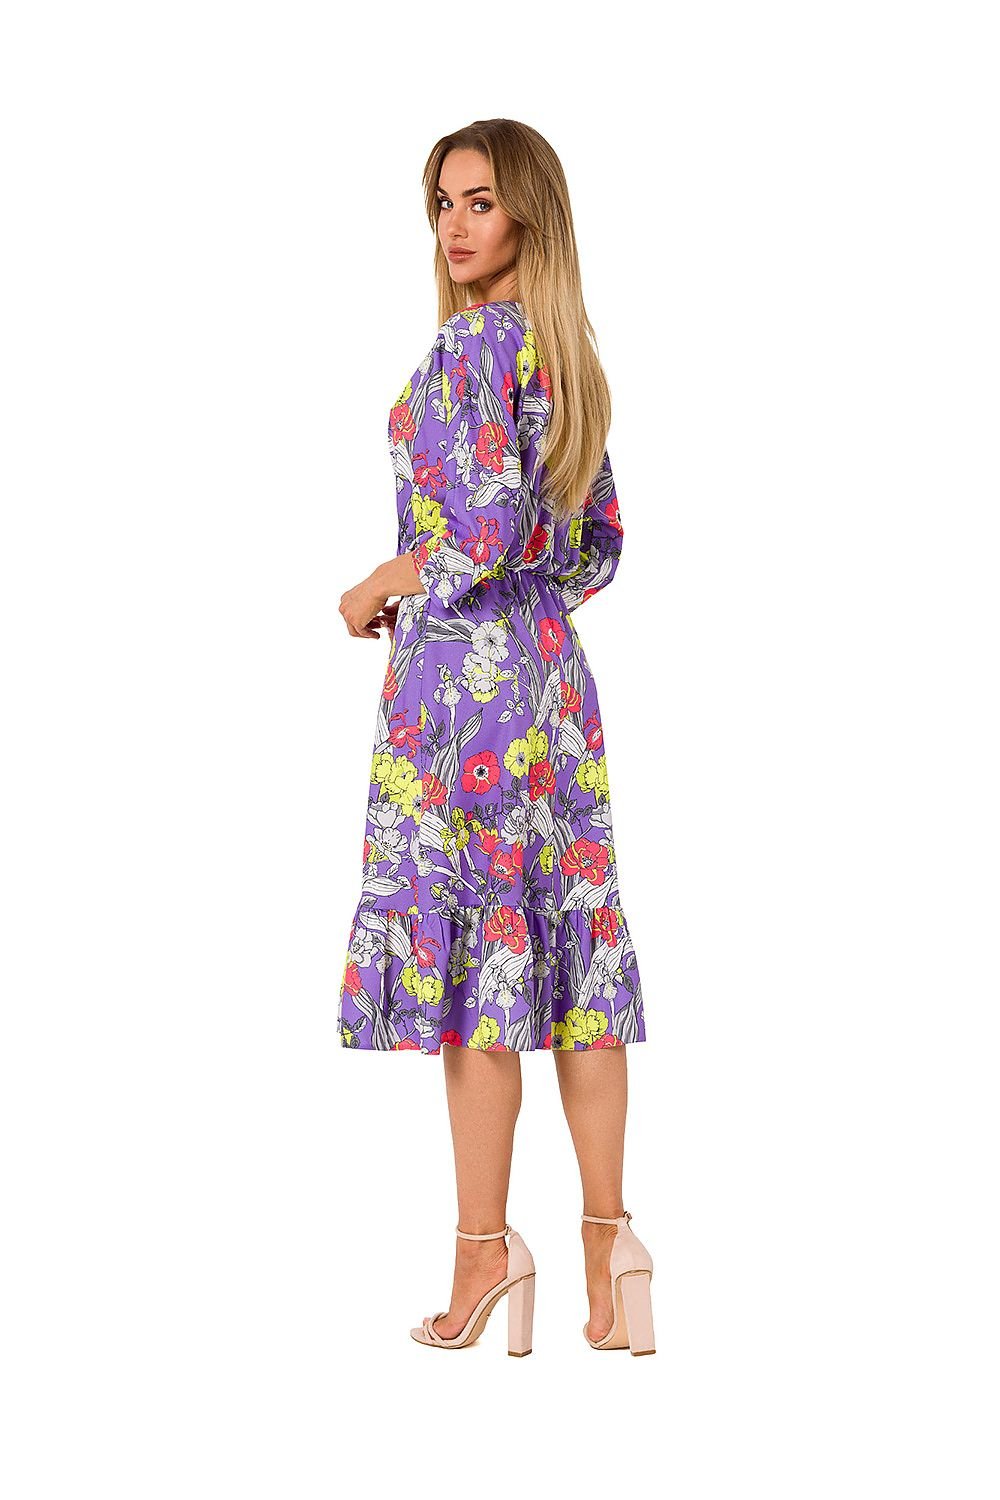 Radiant Summer Sleeveless Dress